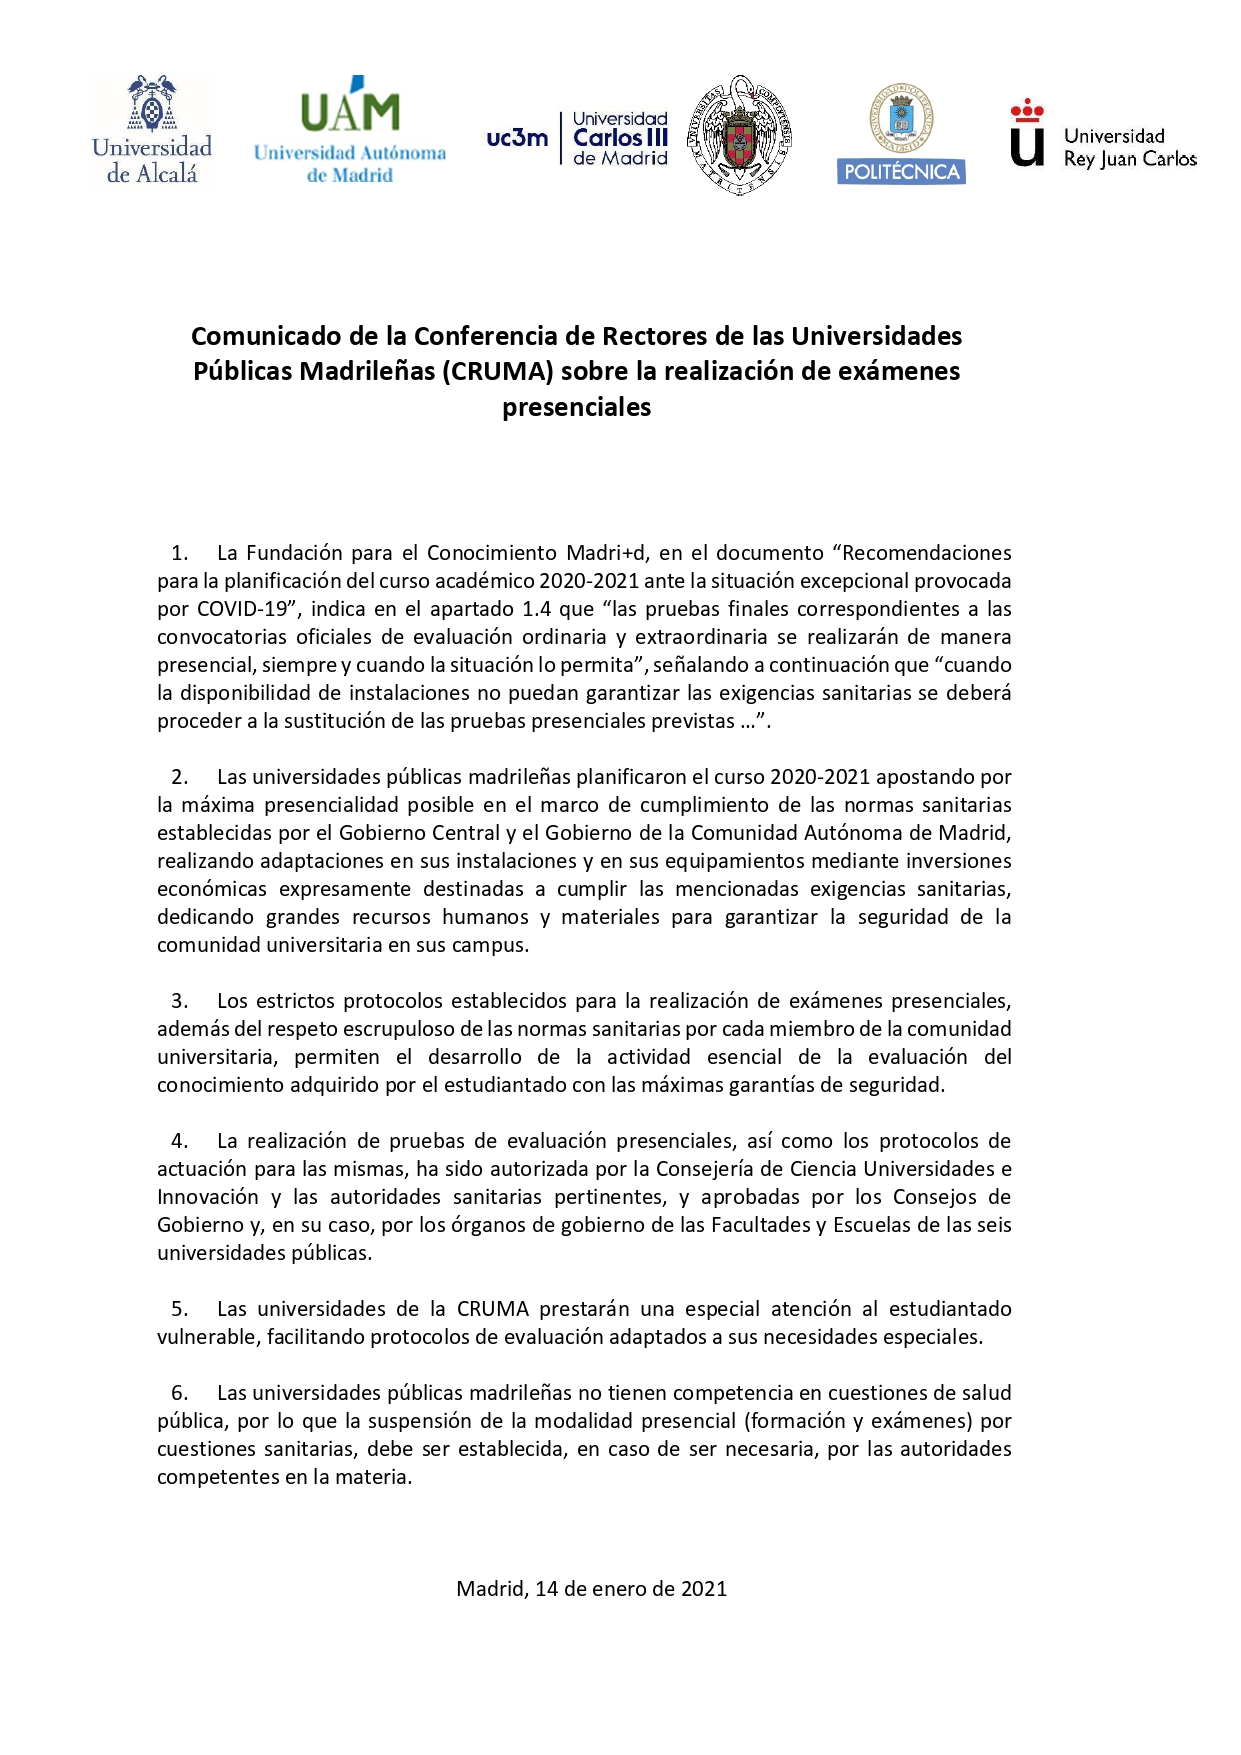 Comunicado de la Conferencia de Rectores de las Universidades Publicas Madrileñas sobre la realización de exámenes presenciales